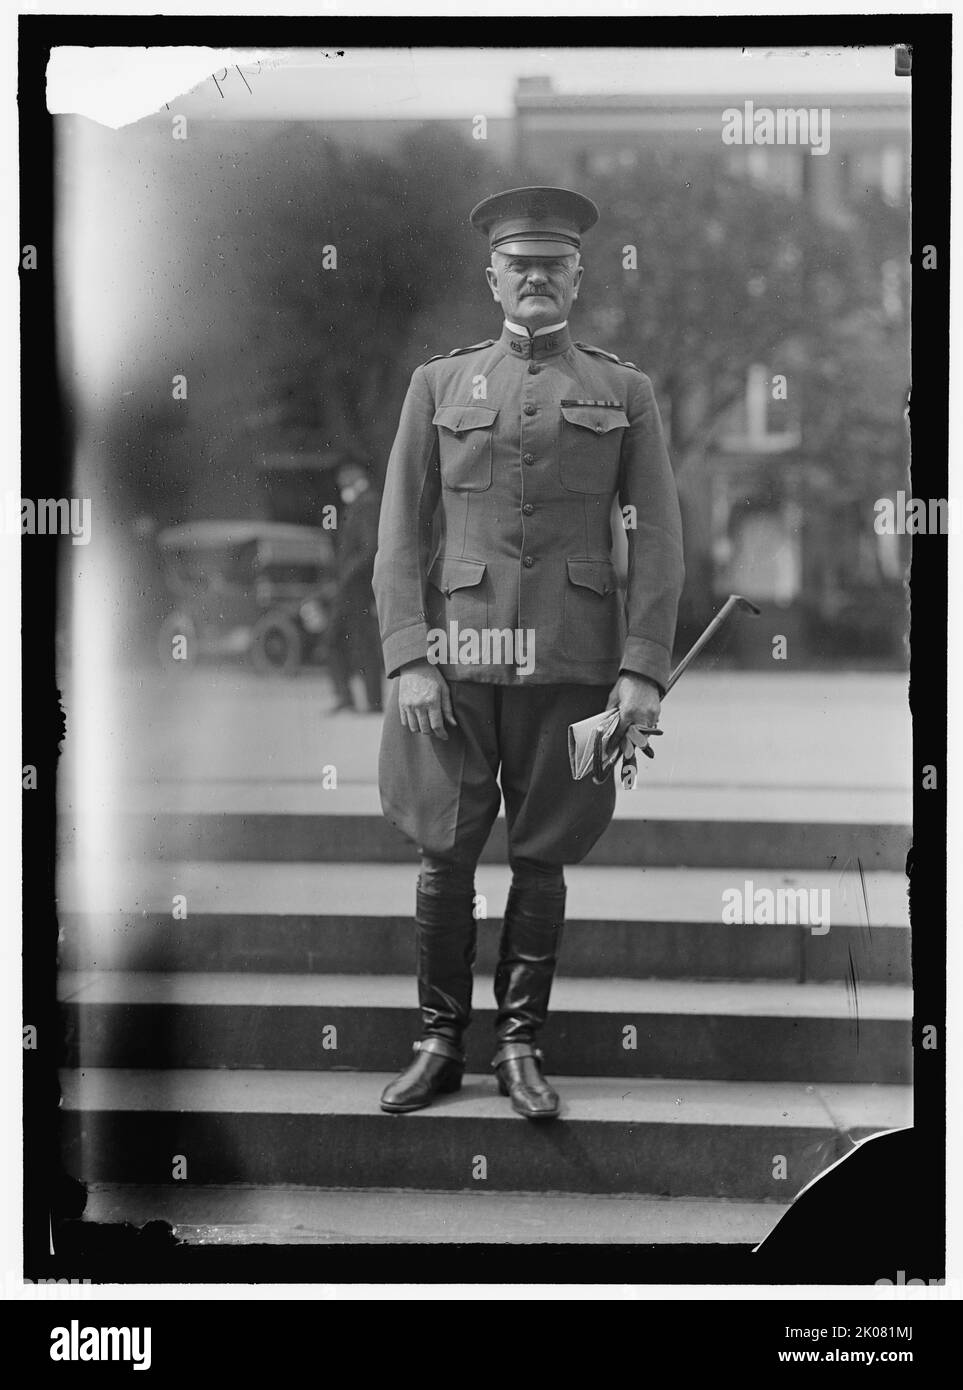 Général John J. Pershing, entre 1916 et 1918. Pershing était commandant des forces expéditionnaires américaines sur le front occidental pendant la première Guerre mondiale Banque D'Images